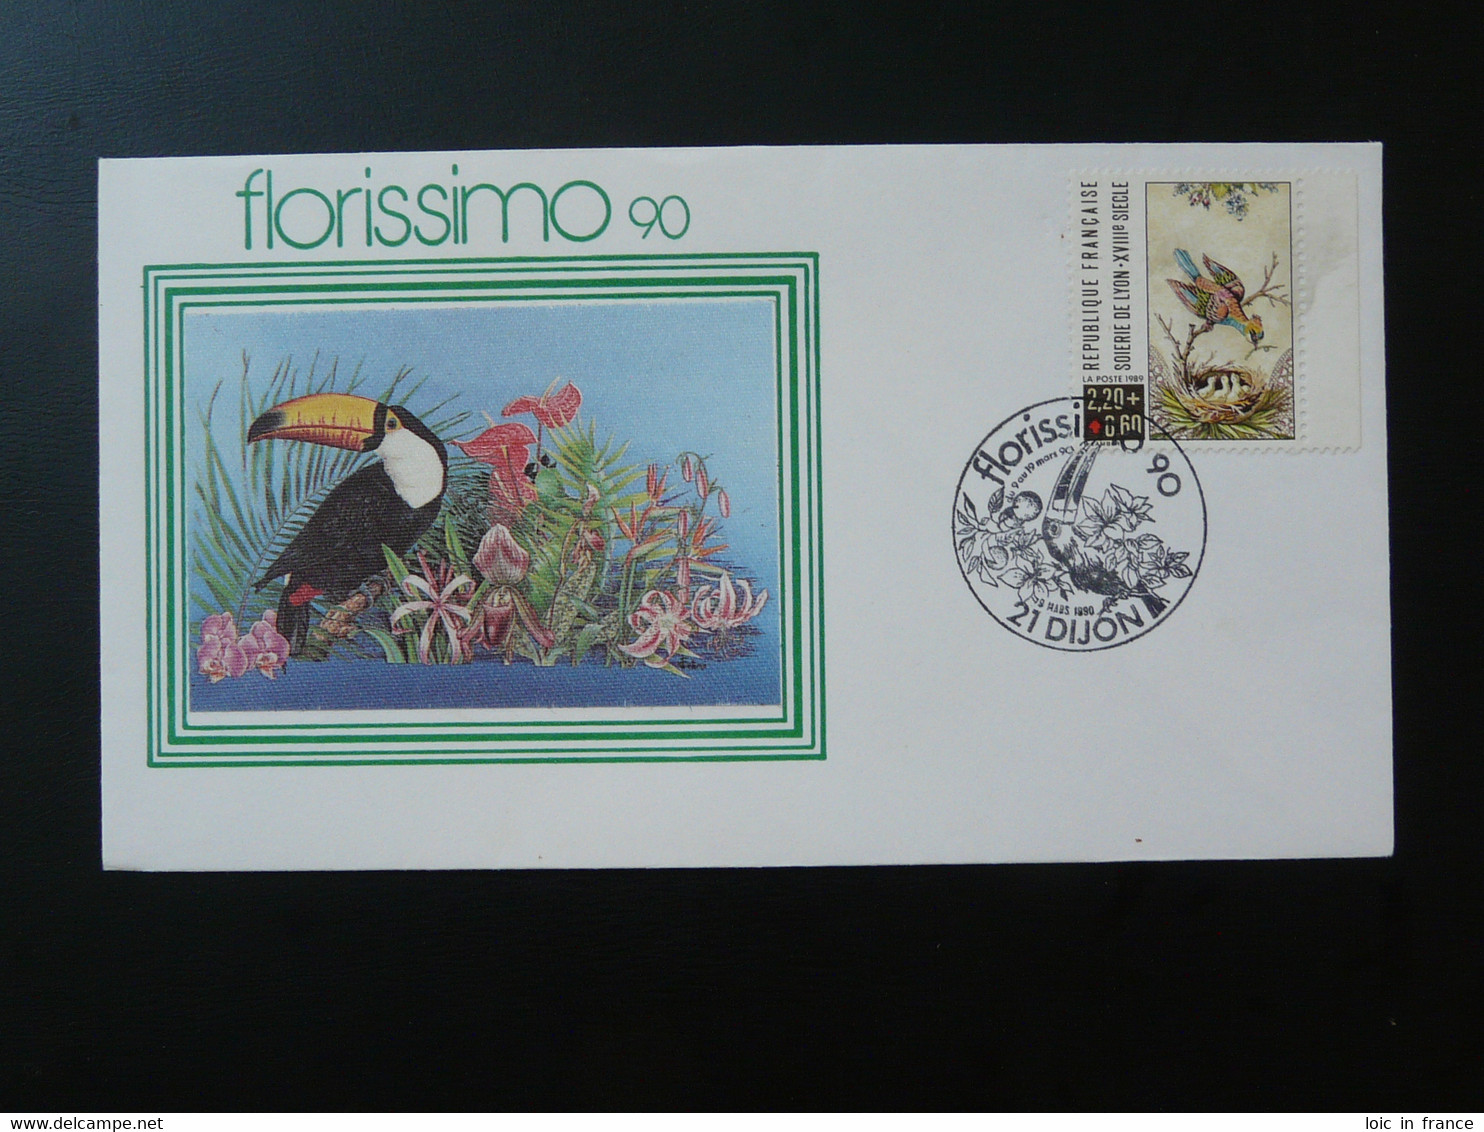 Lettre Cover Oiseau Toucan Bird Florissimo Dijon 21 Cote D'Or 1990 - Oblitérations & Flammes